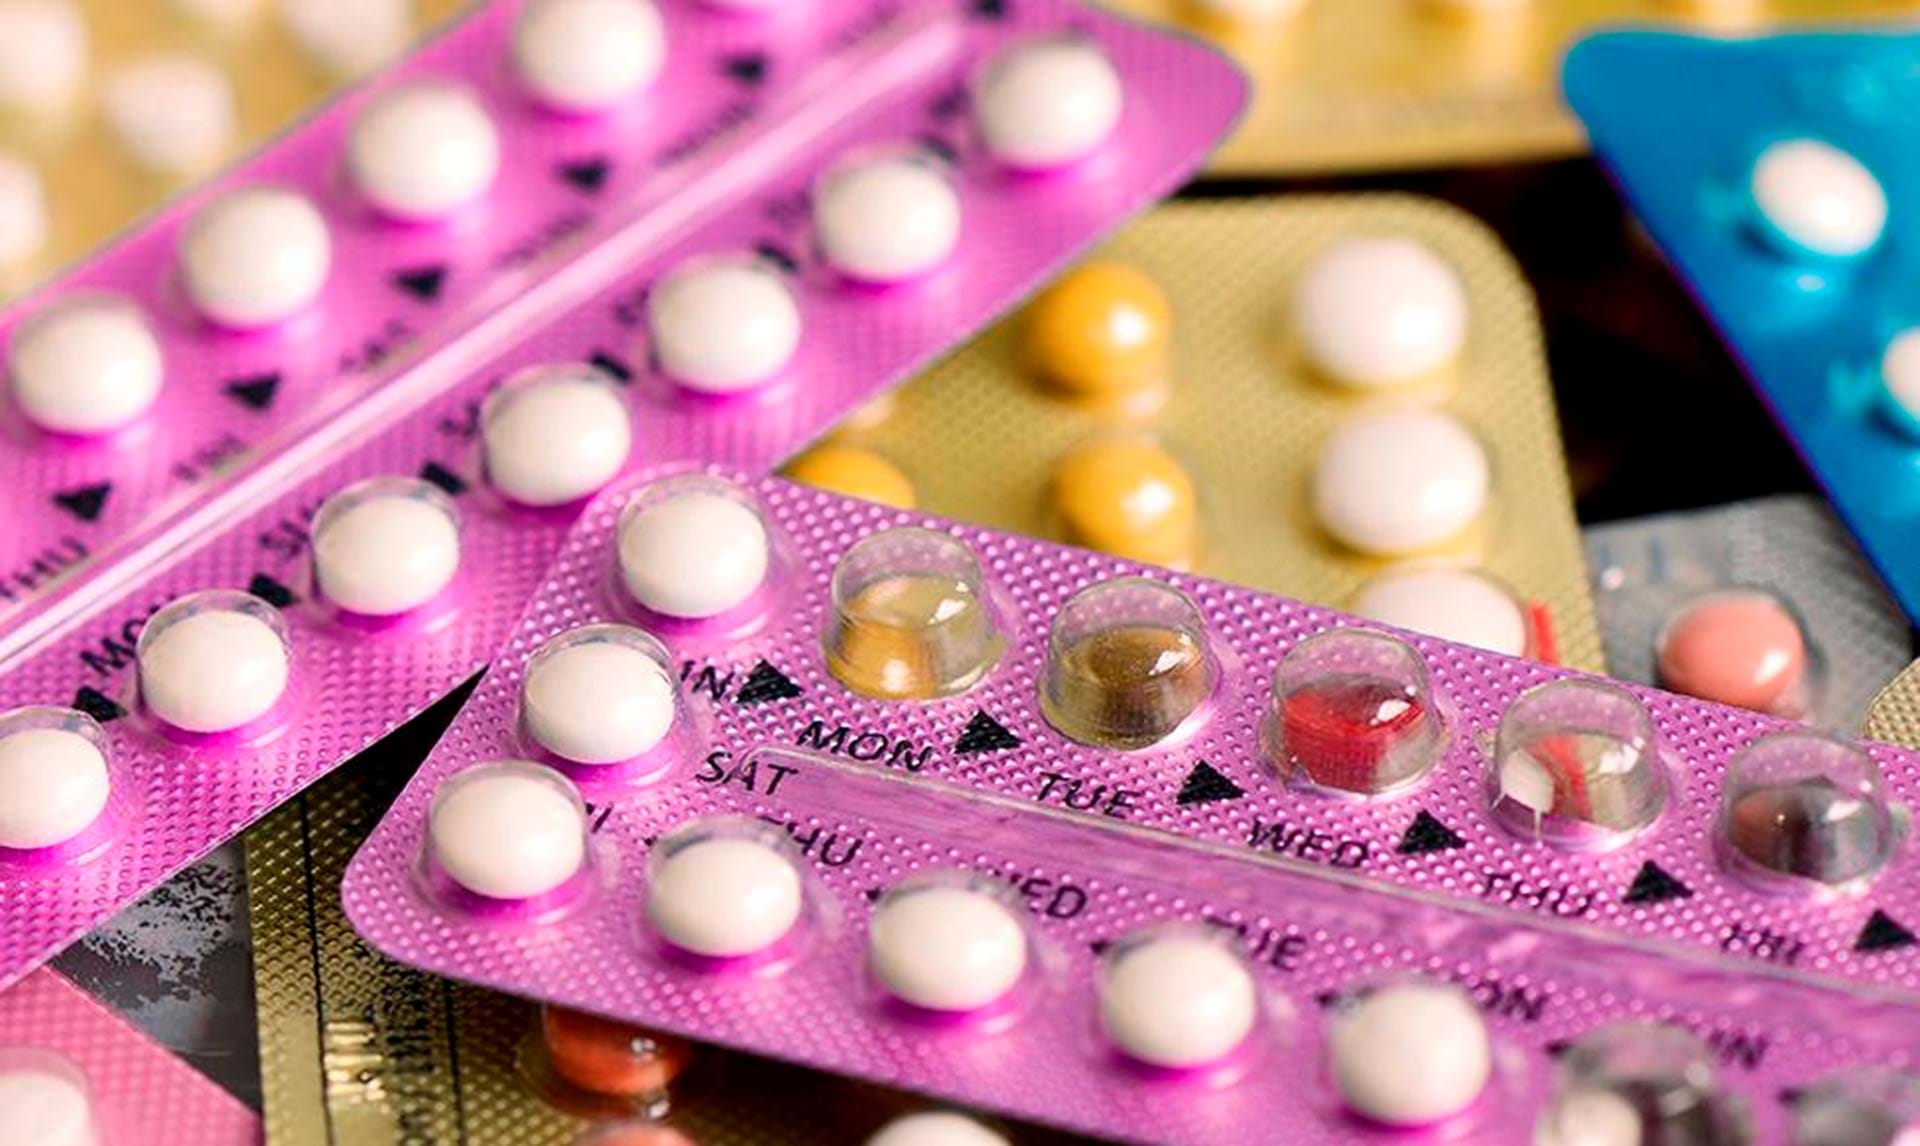 Bitterhed farvel flydende P-piller øger risiko for brystkræft - ALT.dk